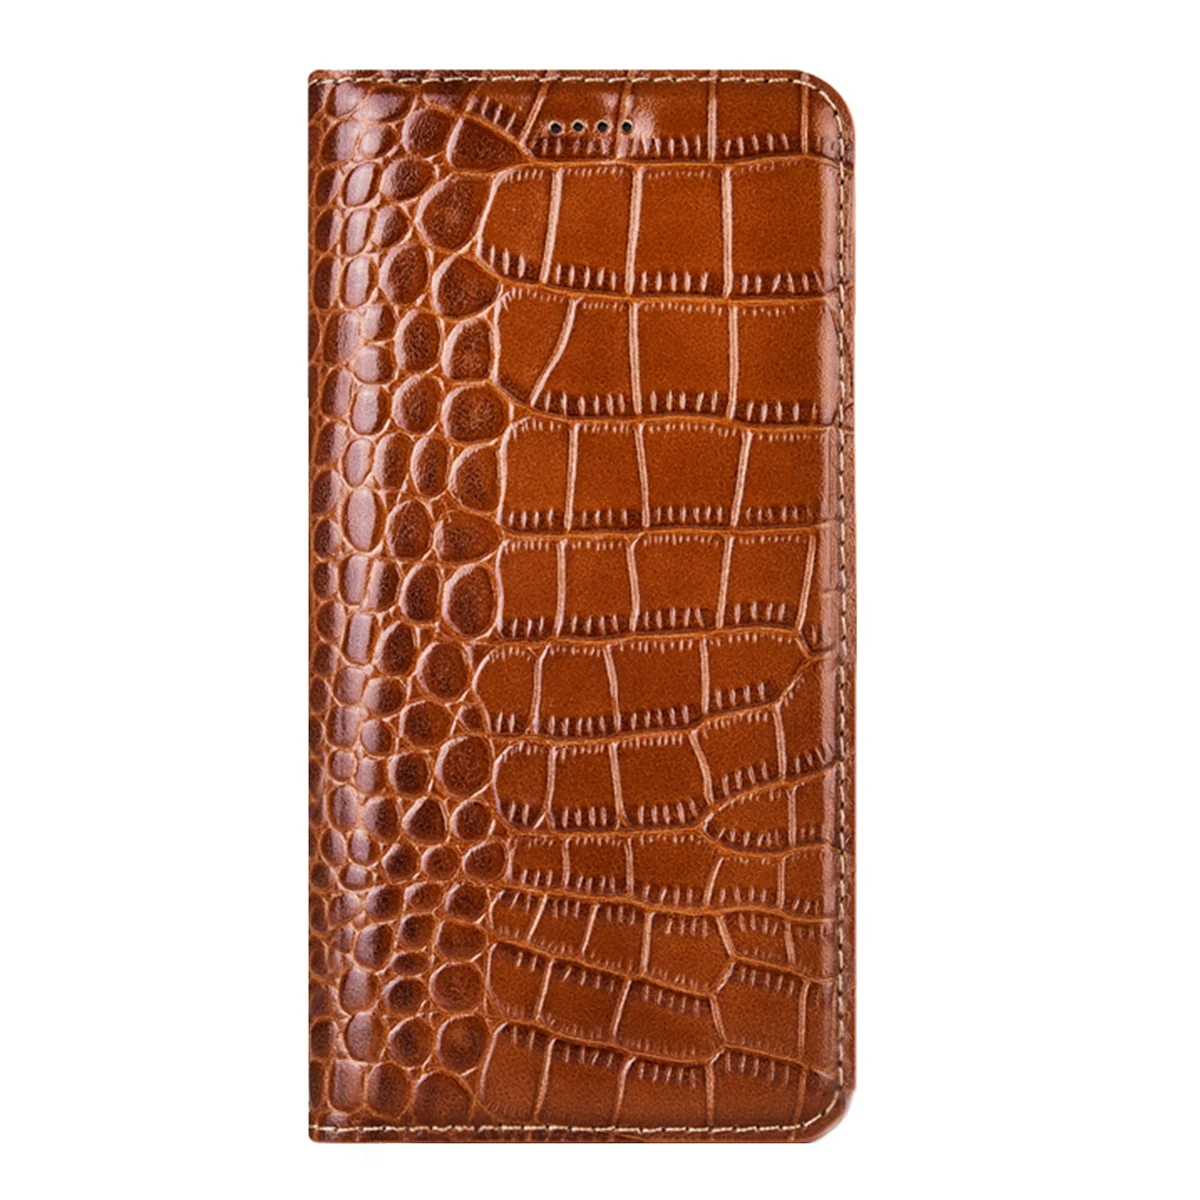 Роскошный чехол-книжка из натуральной крокодиловой кожи для Essential Phone PH-1 деловой